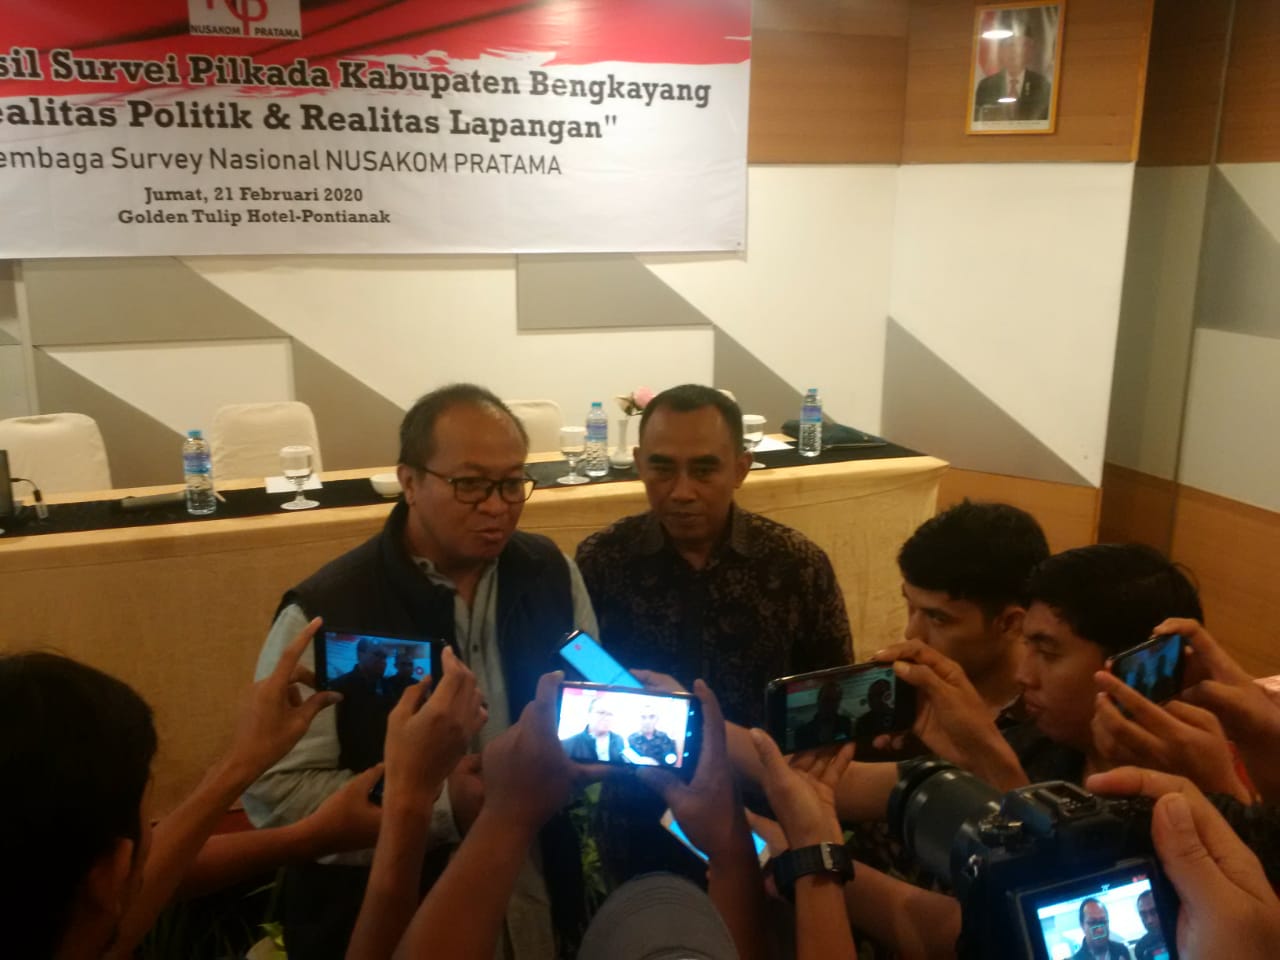 Caption: Direktur Eksekutif Nusakom Pratama, Ari Junaedi menyampaikan hasil survei Pilkada Bengkayang, di Hotel Golden Tulip Pontianak, Jumat (21/02/2020).